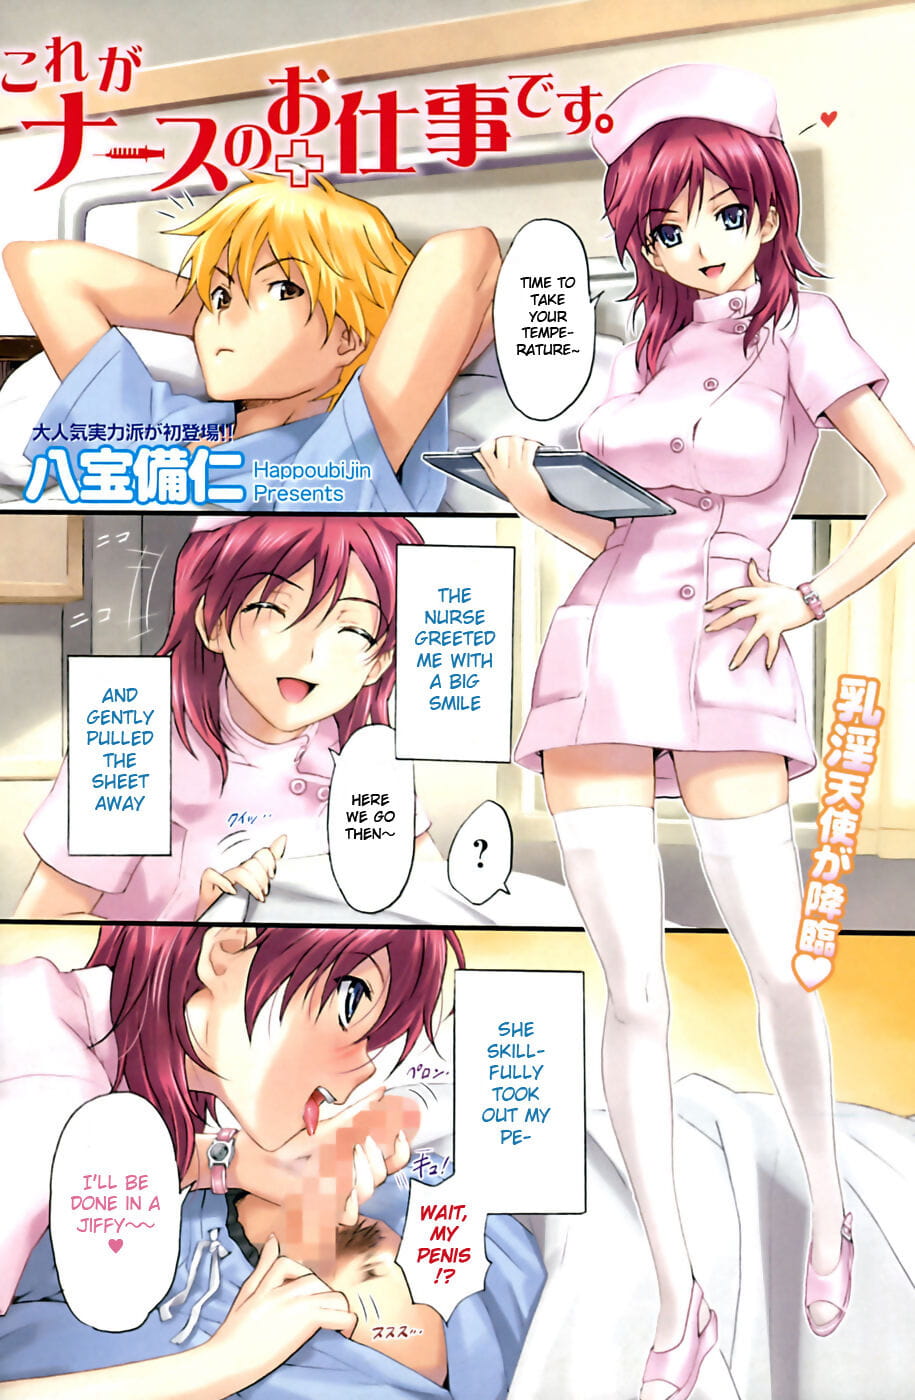 科雷 ga 护士 没有 oshigoto す - 它的 一个 护士 :工作： page 1